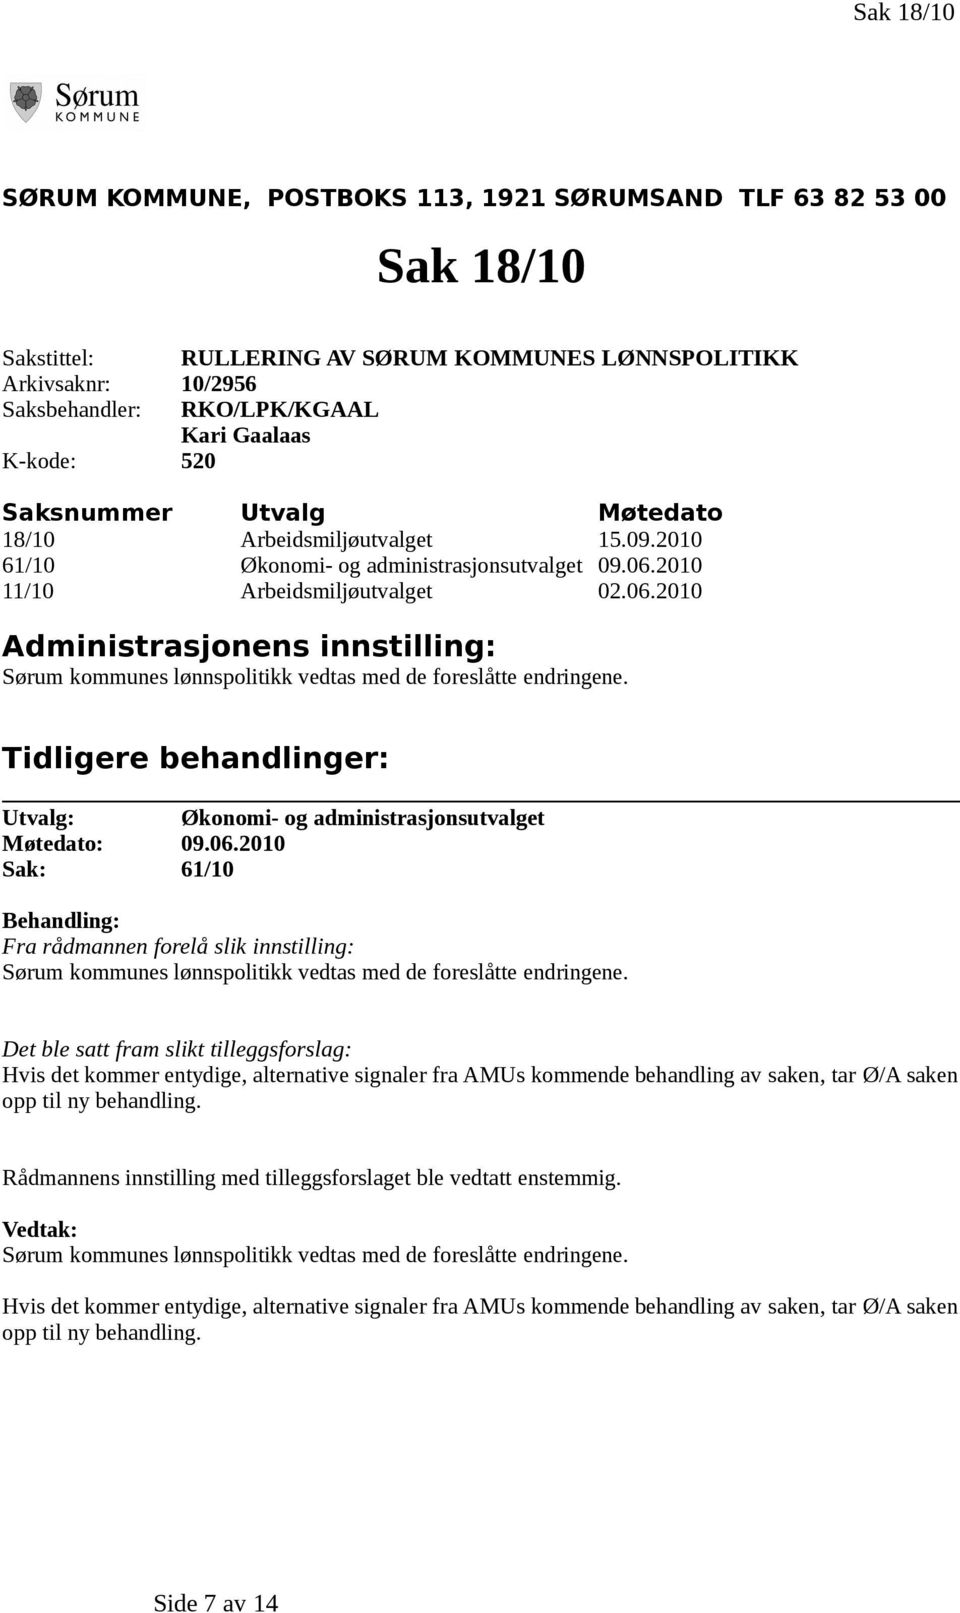 2010 11/10 Arbeidsmiljøutvalget 02.06.2010 Administrasjonens innstilling: Sørum kommunes lønnspolitikk vedtas med de foreslåtte endringene.